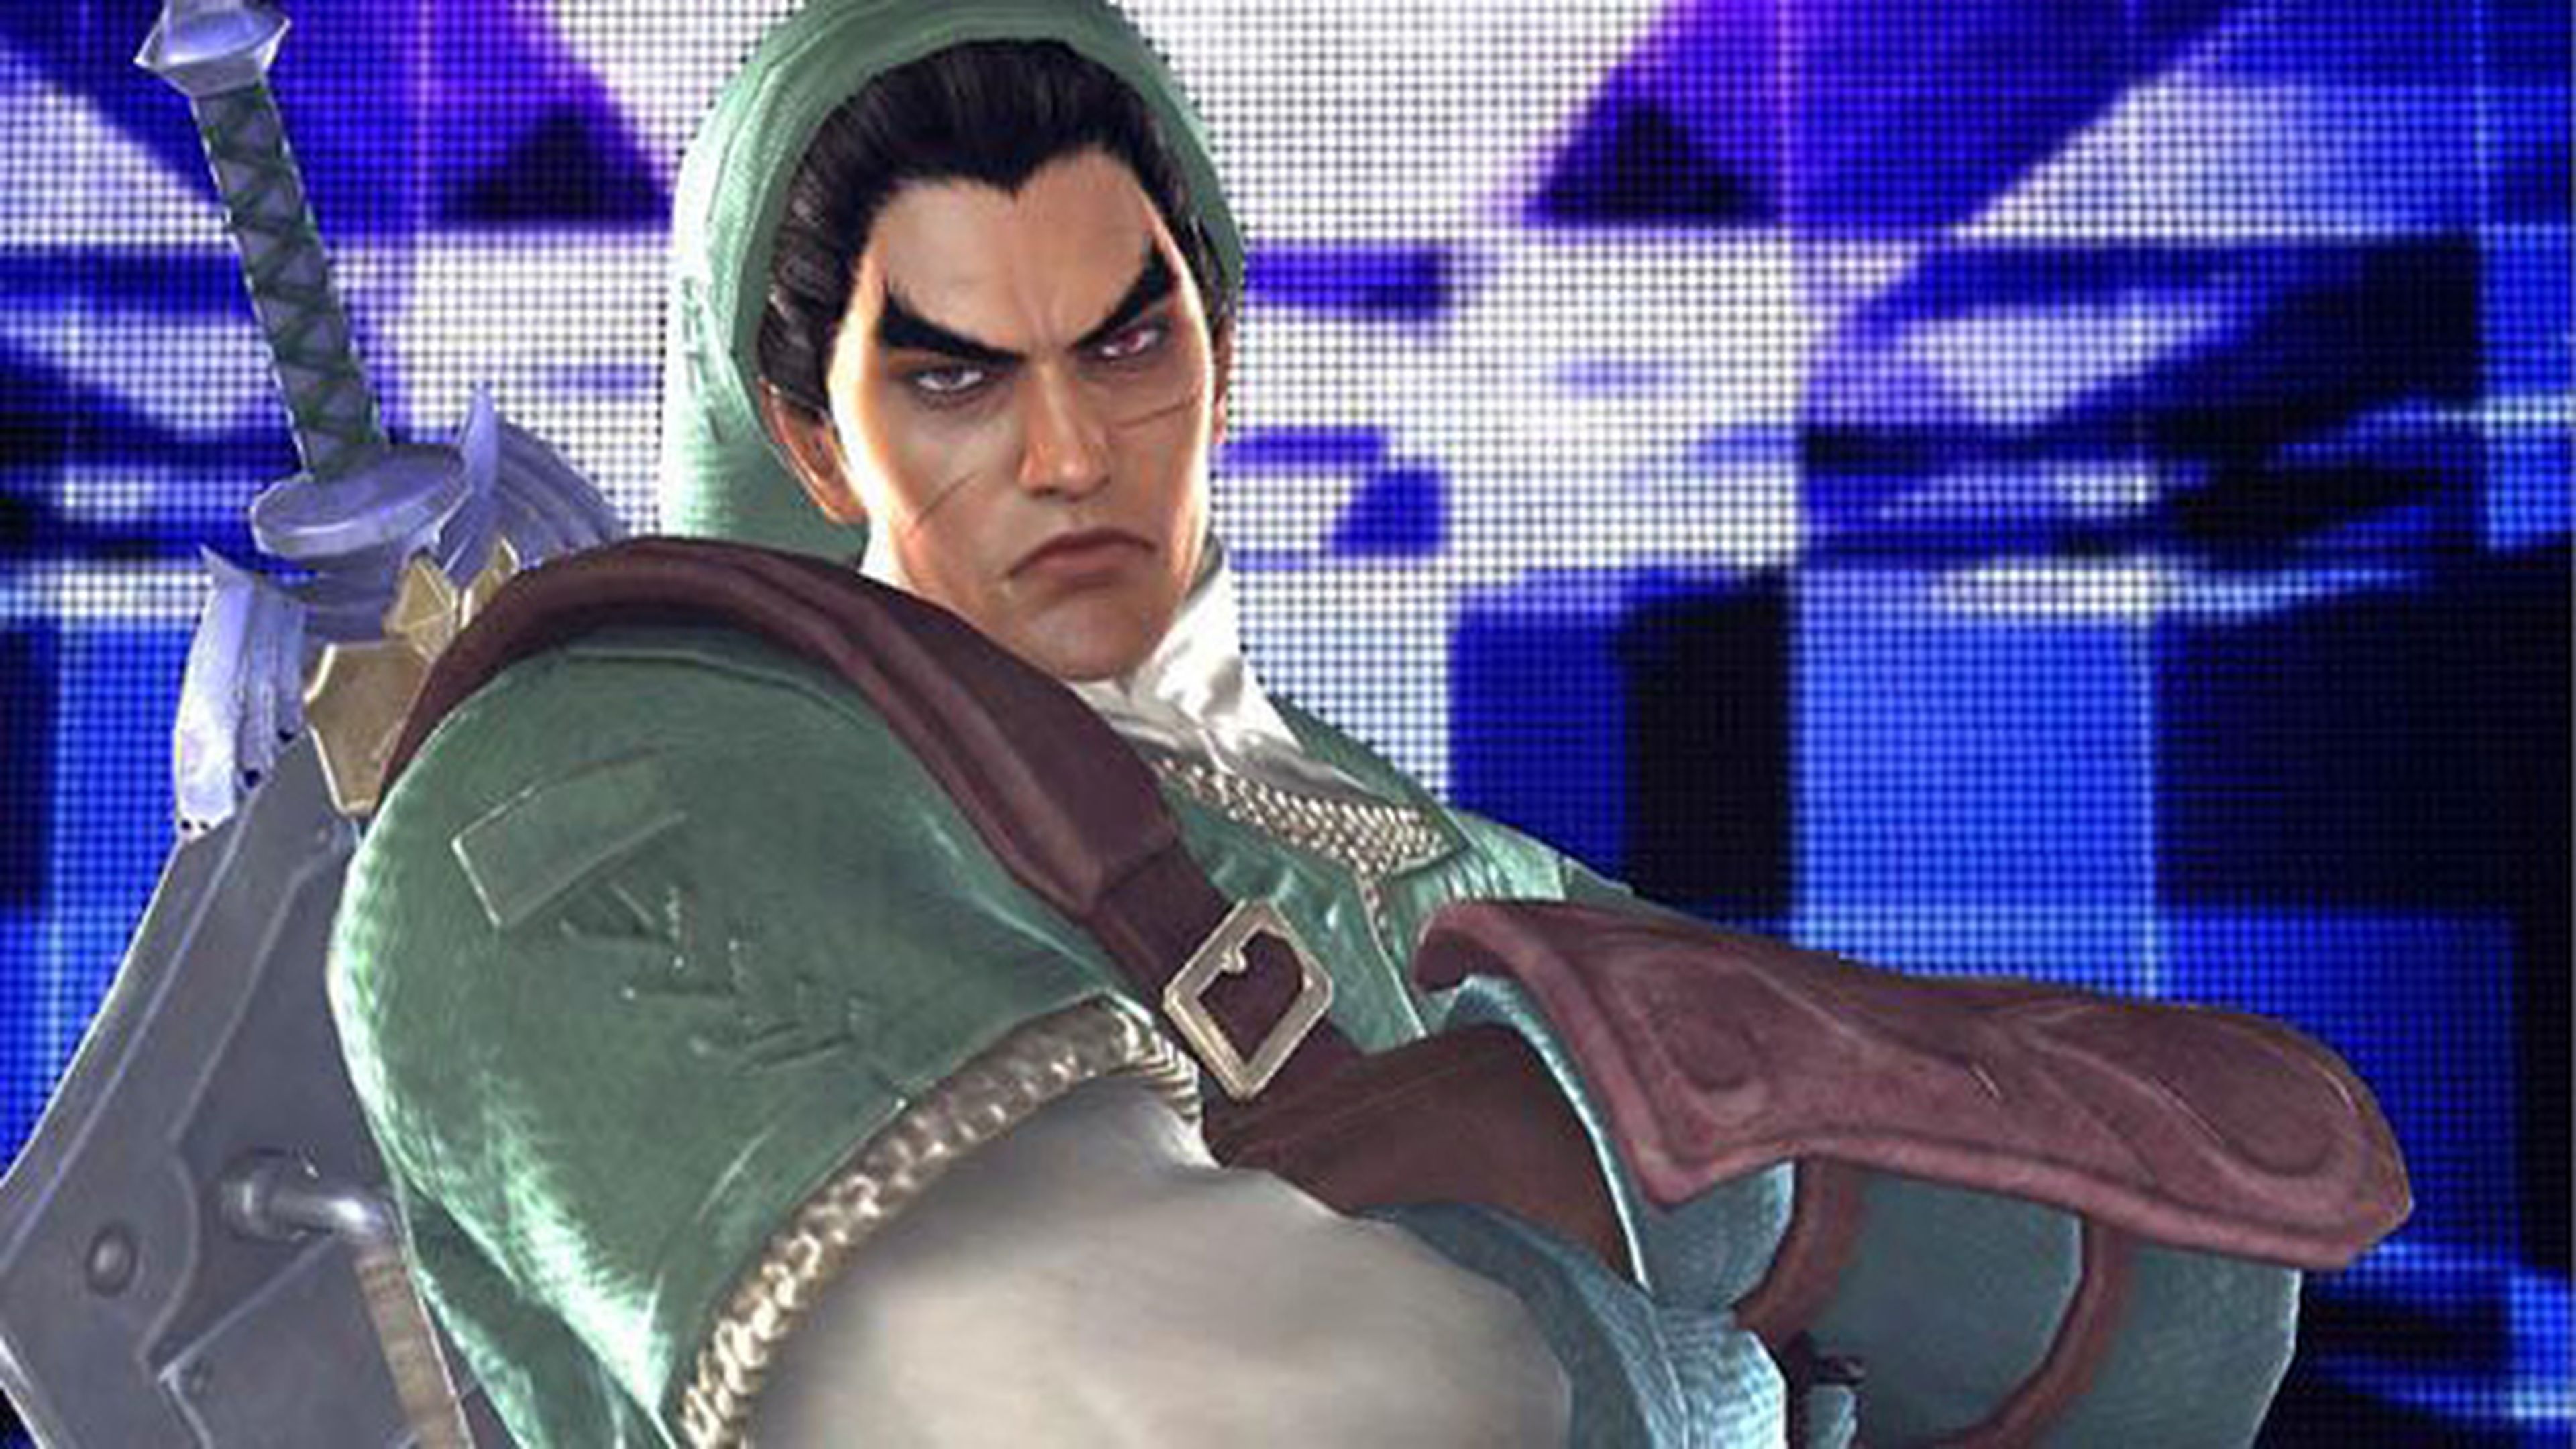 Tekken Tag Tournament 2 descargable en la eShop de Wii U